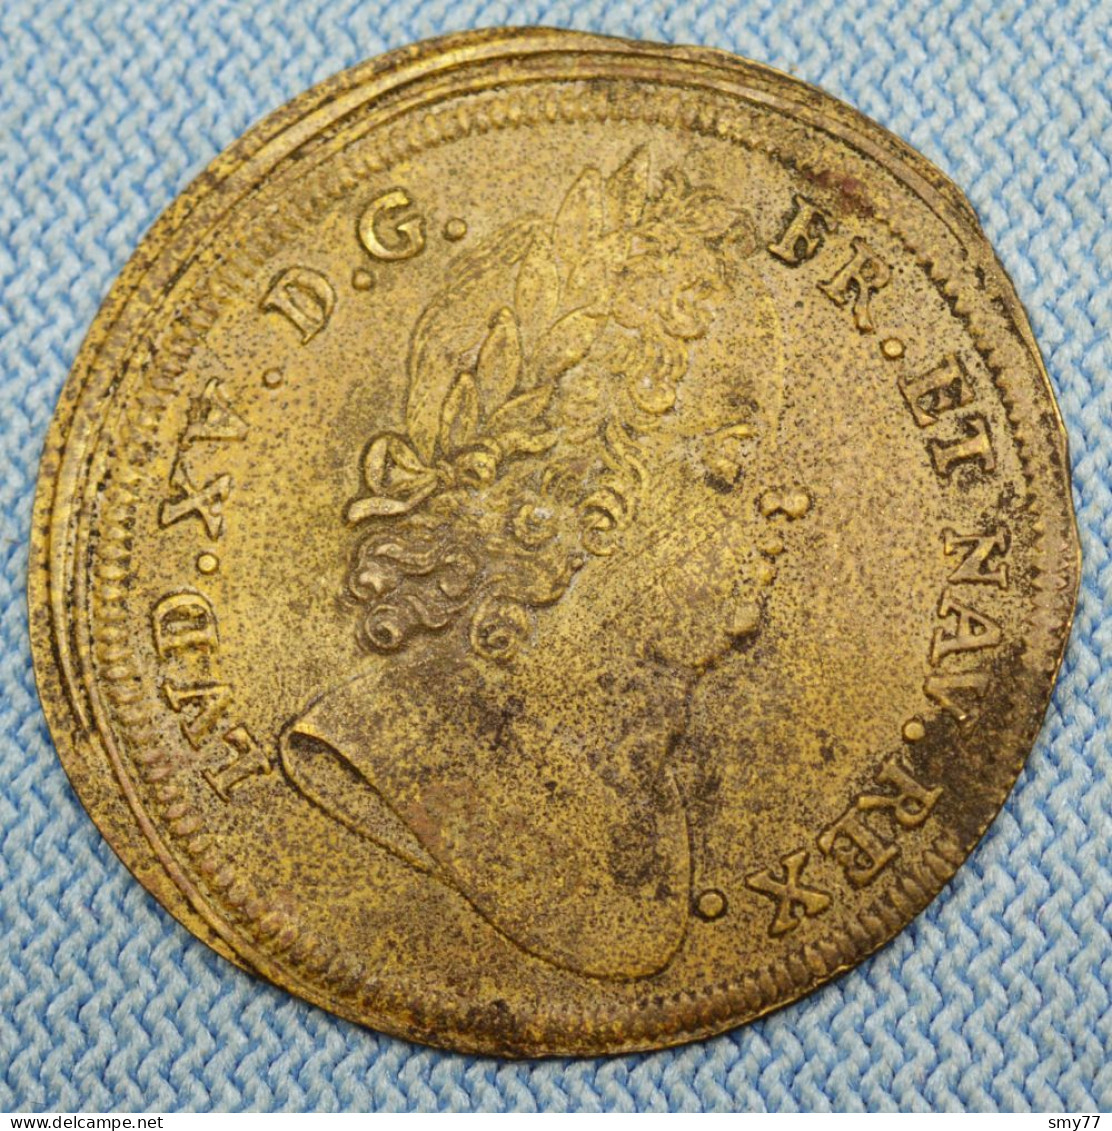 Jeton De Compte • Louis XV • ≈ 1730 • Double L Entrelacés • Ø 27 Mm • Nuremberg / Nürnberg • Feu# 13249 • [24-763] - Unclassified